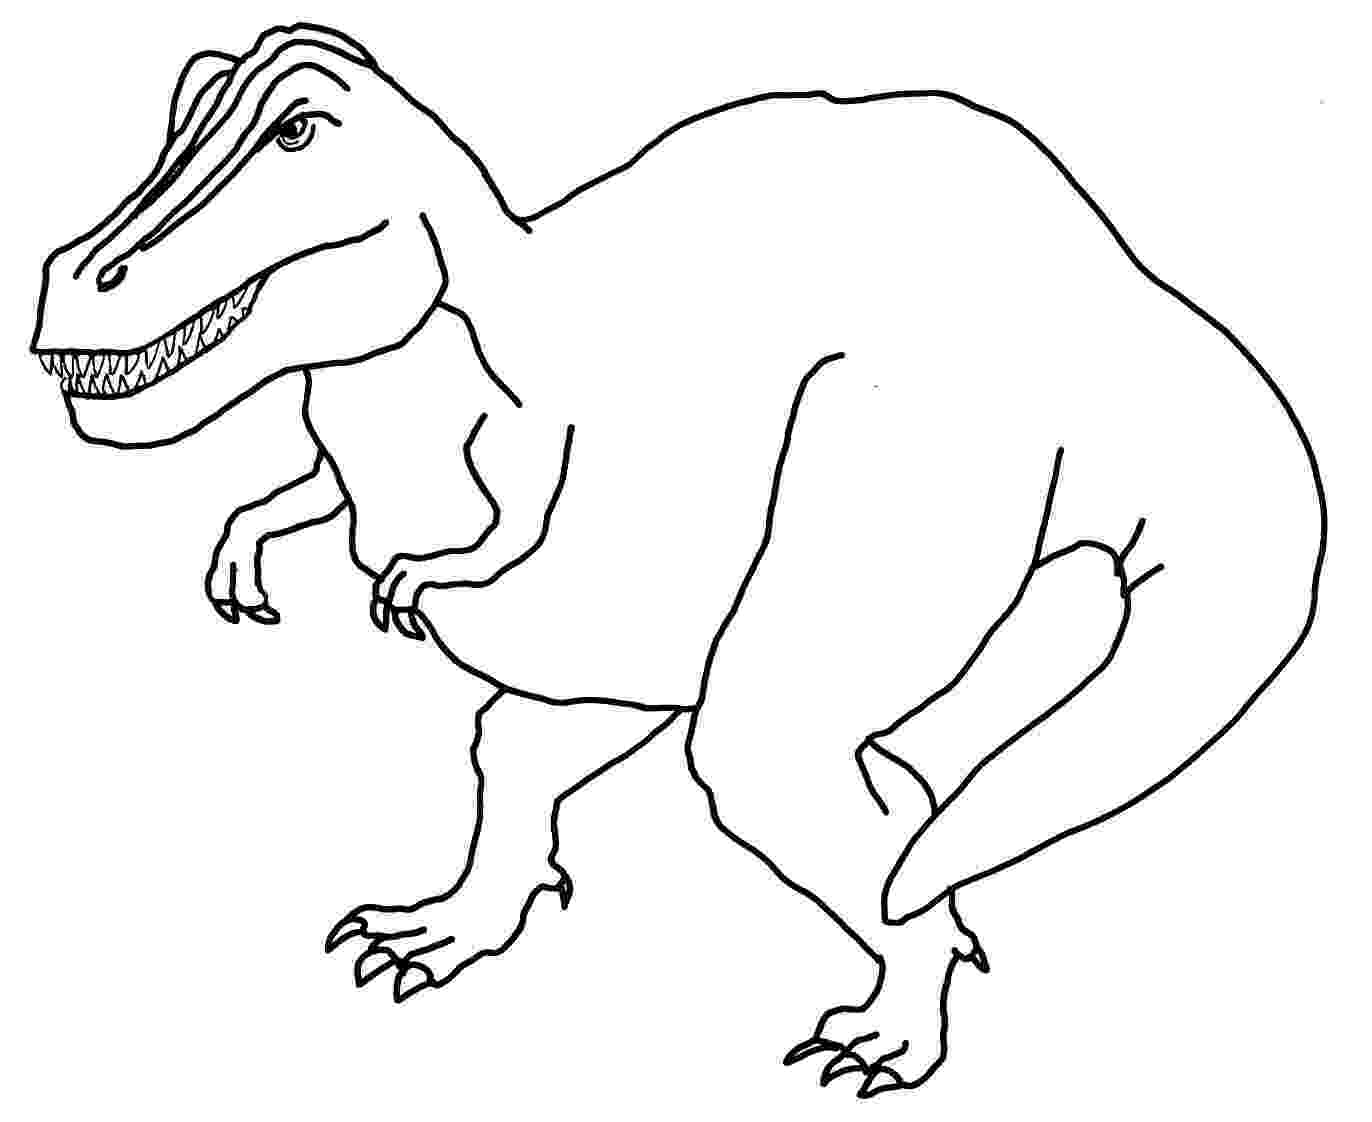 colouring dinosaur free dinosaur printable coloring pages coloring home colouring dinosaur 